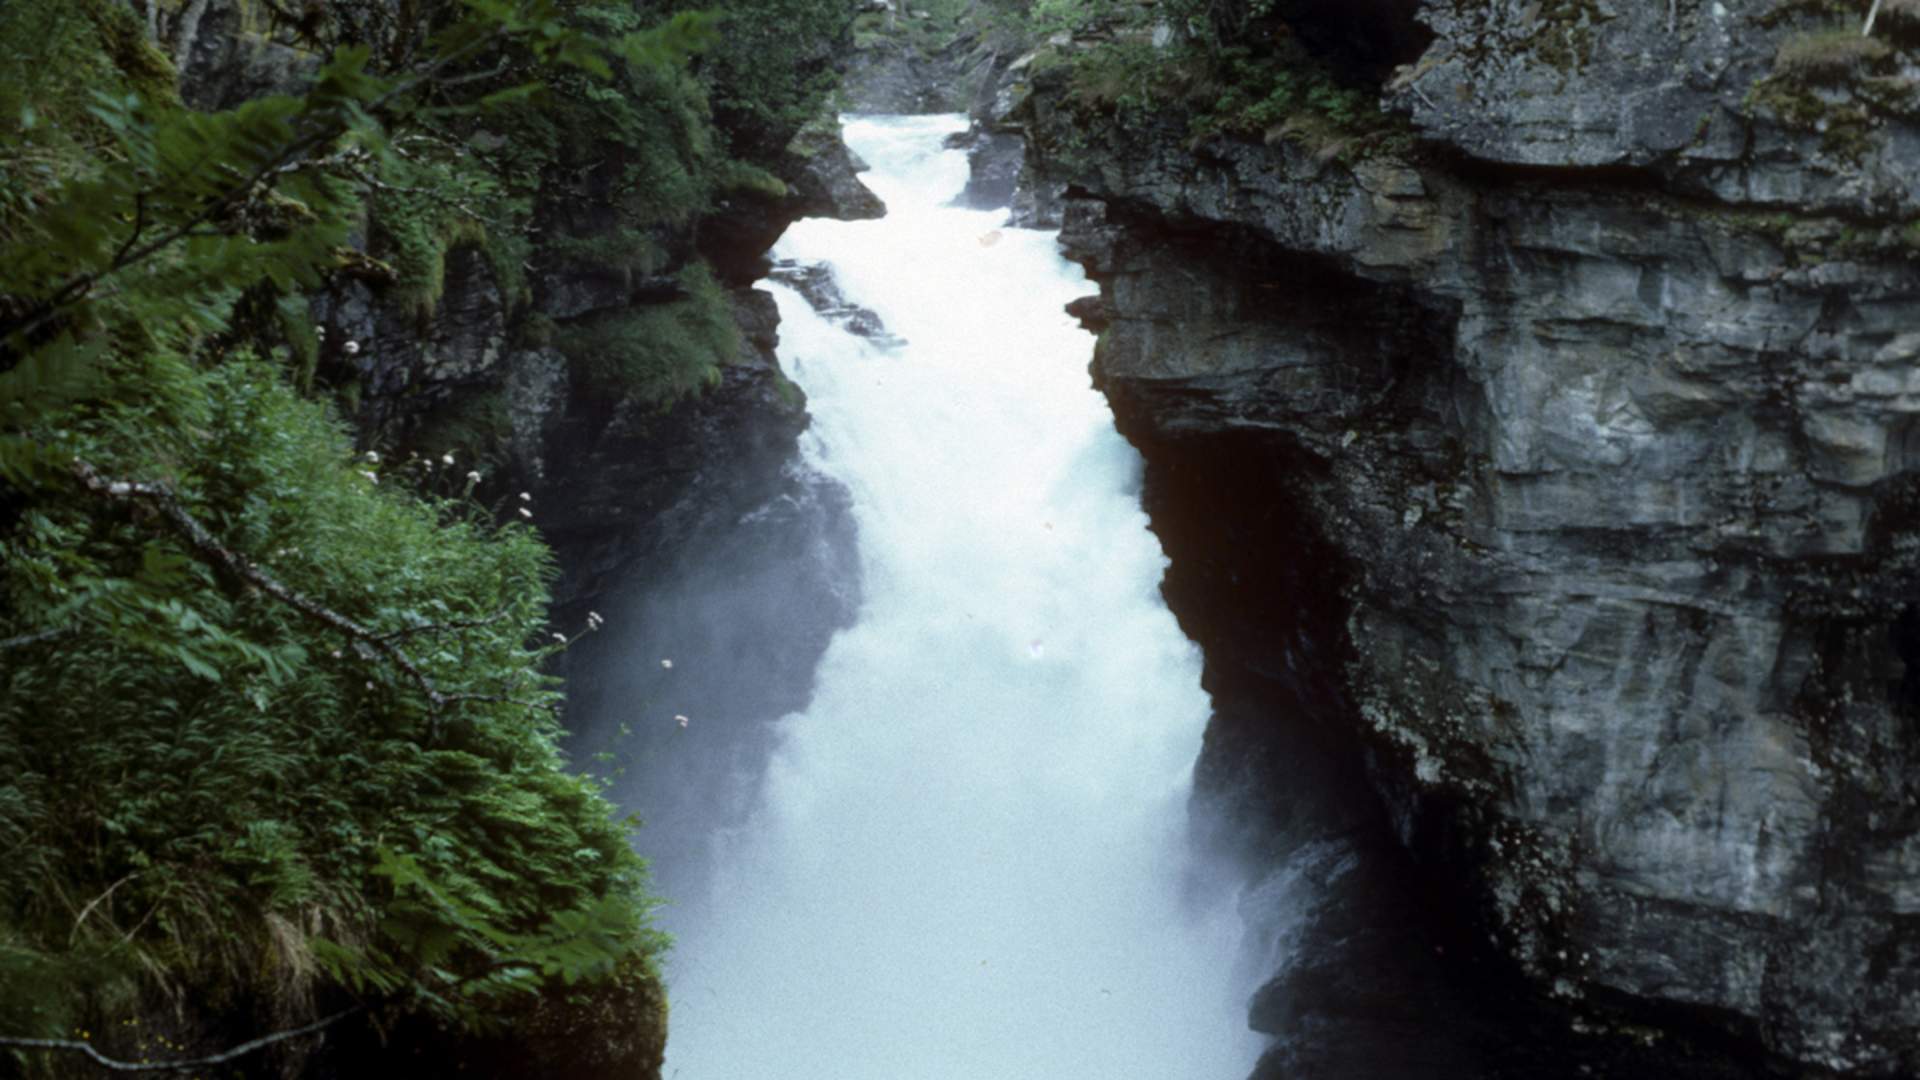 The waterfall Slettafossen